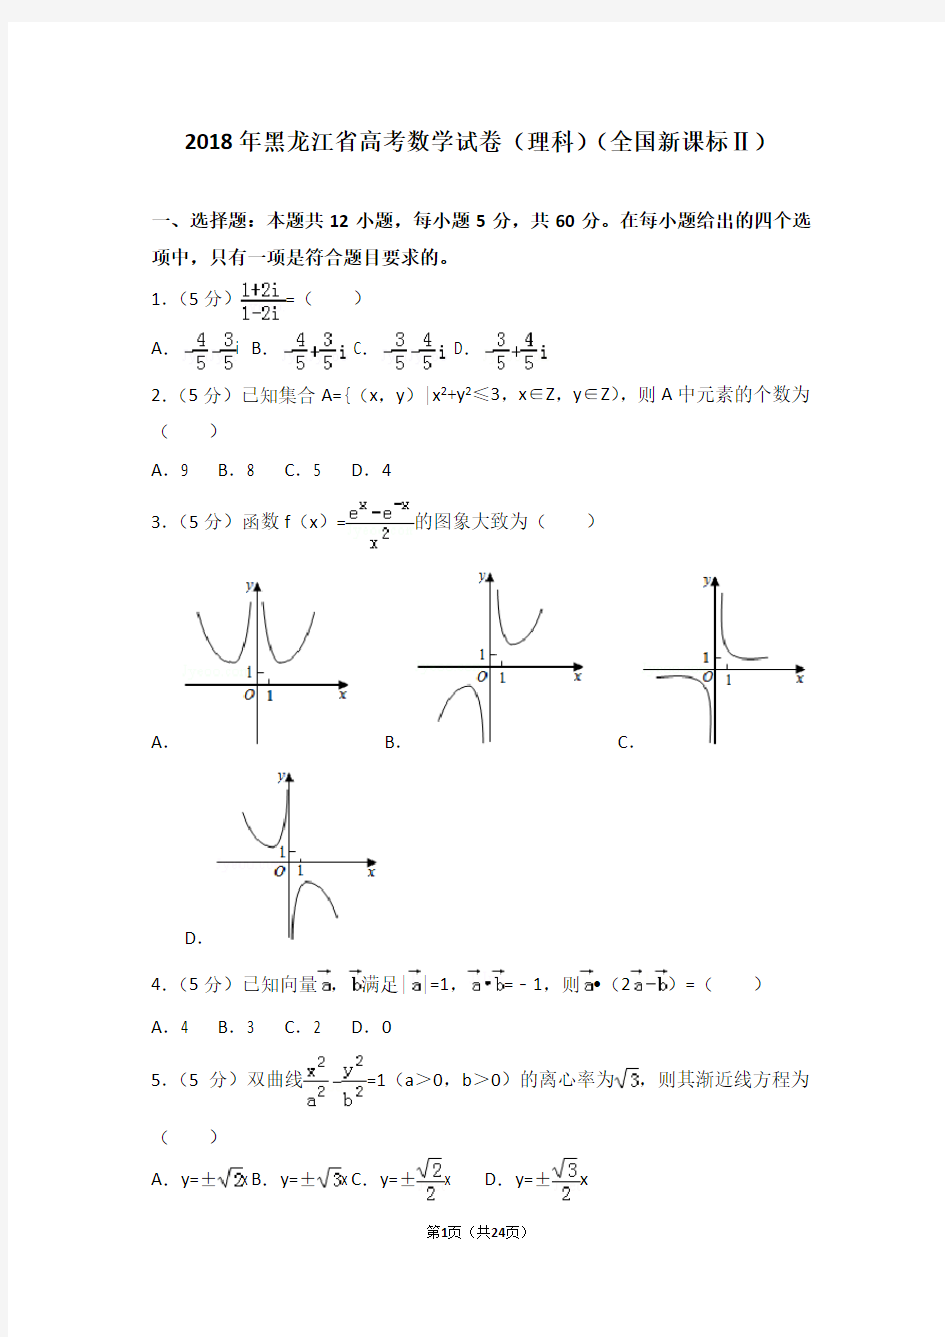 2018年黑龙江省高考数学试卷(理科)(全国新课标Ⅱ)